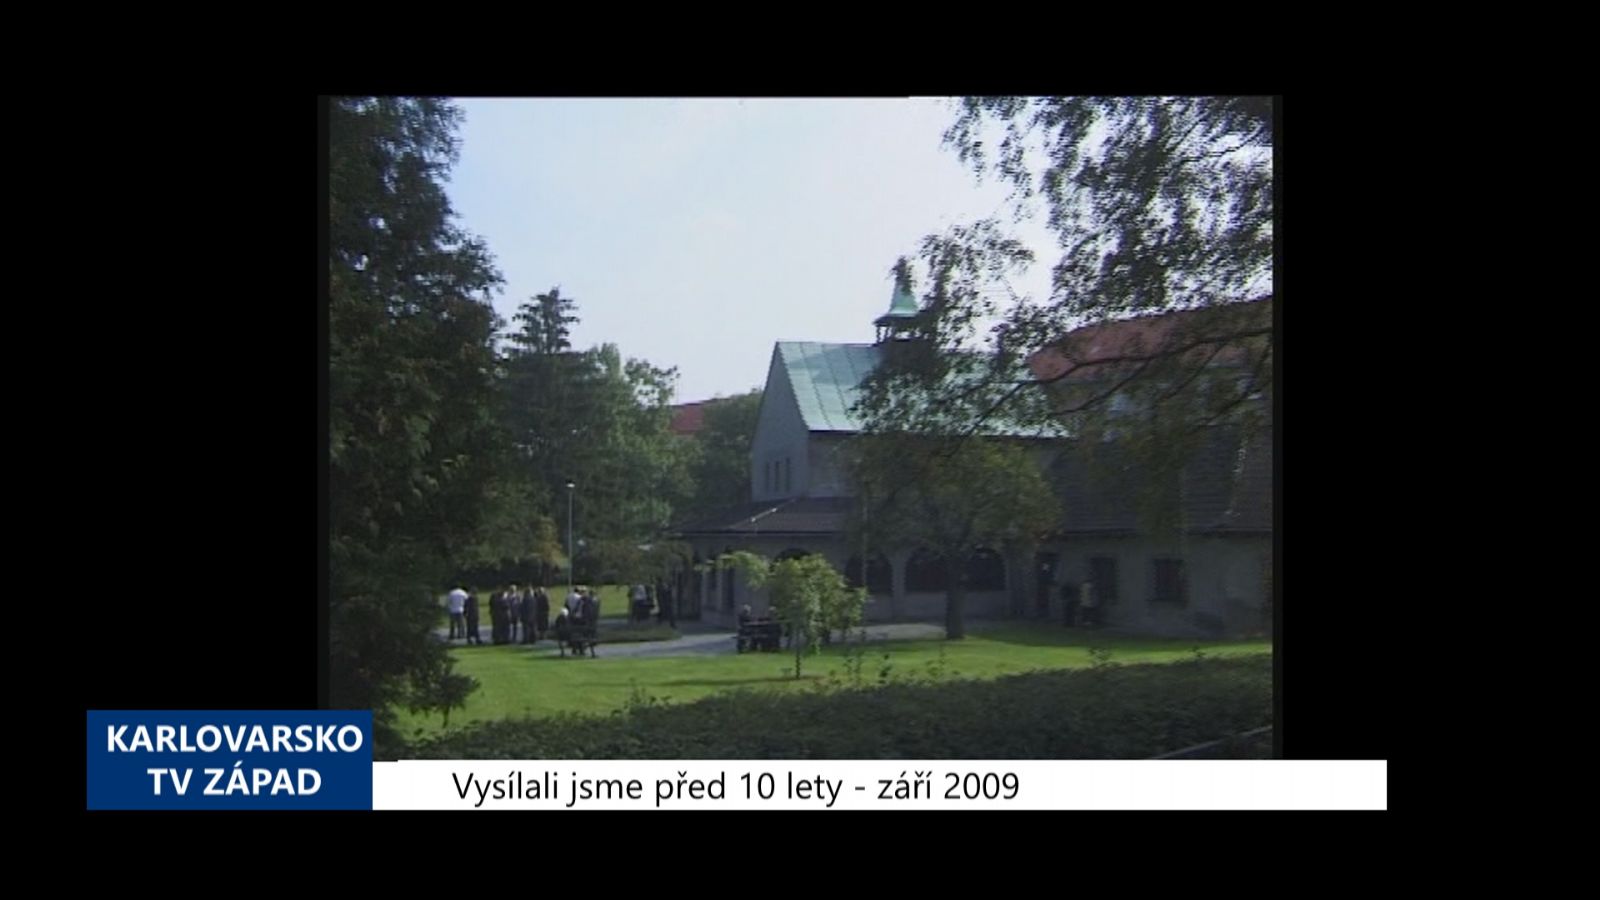 2009 – Sokolov: Oprava hřbitovní kaple bude z městských prostředků (3844) (TV Západ)